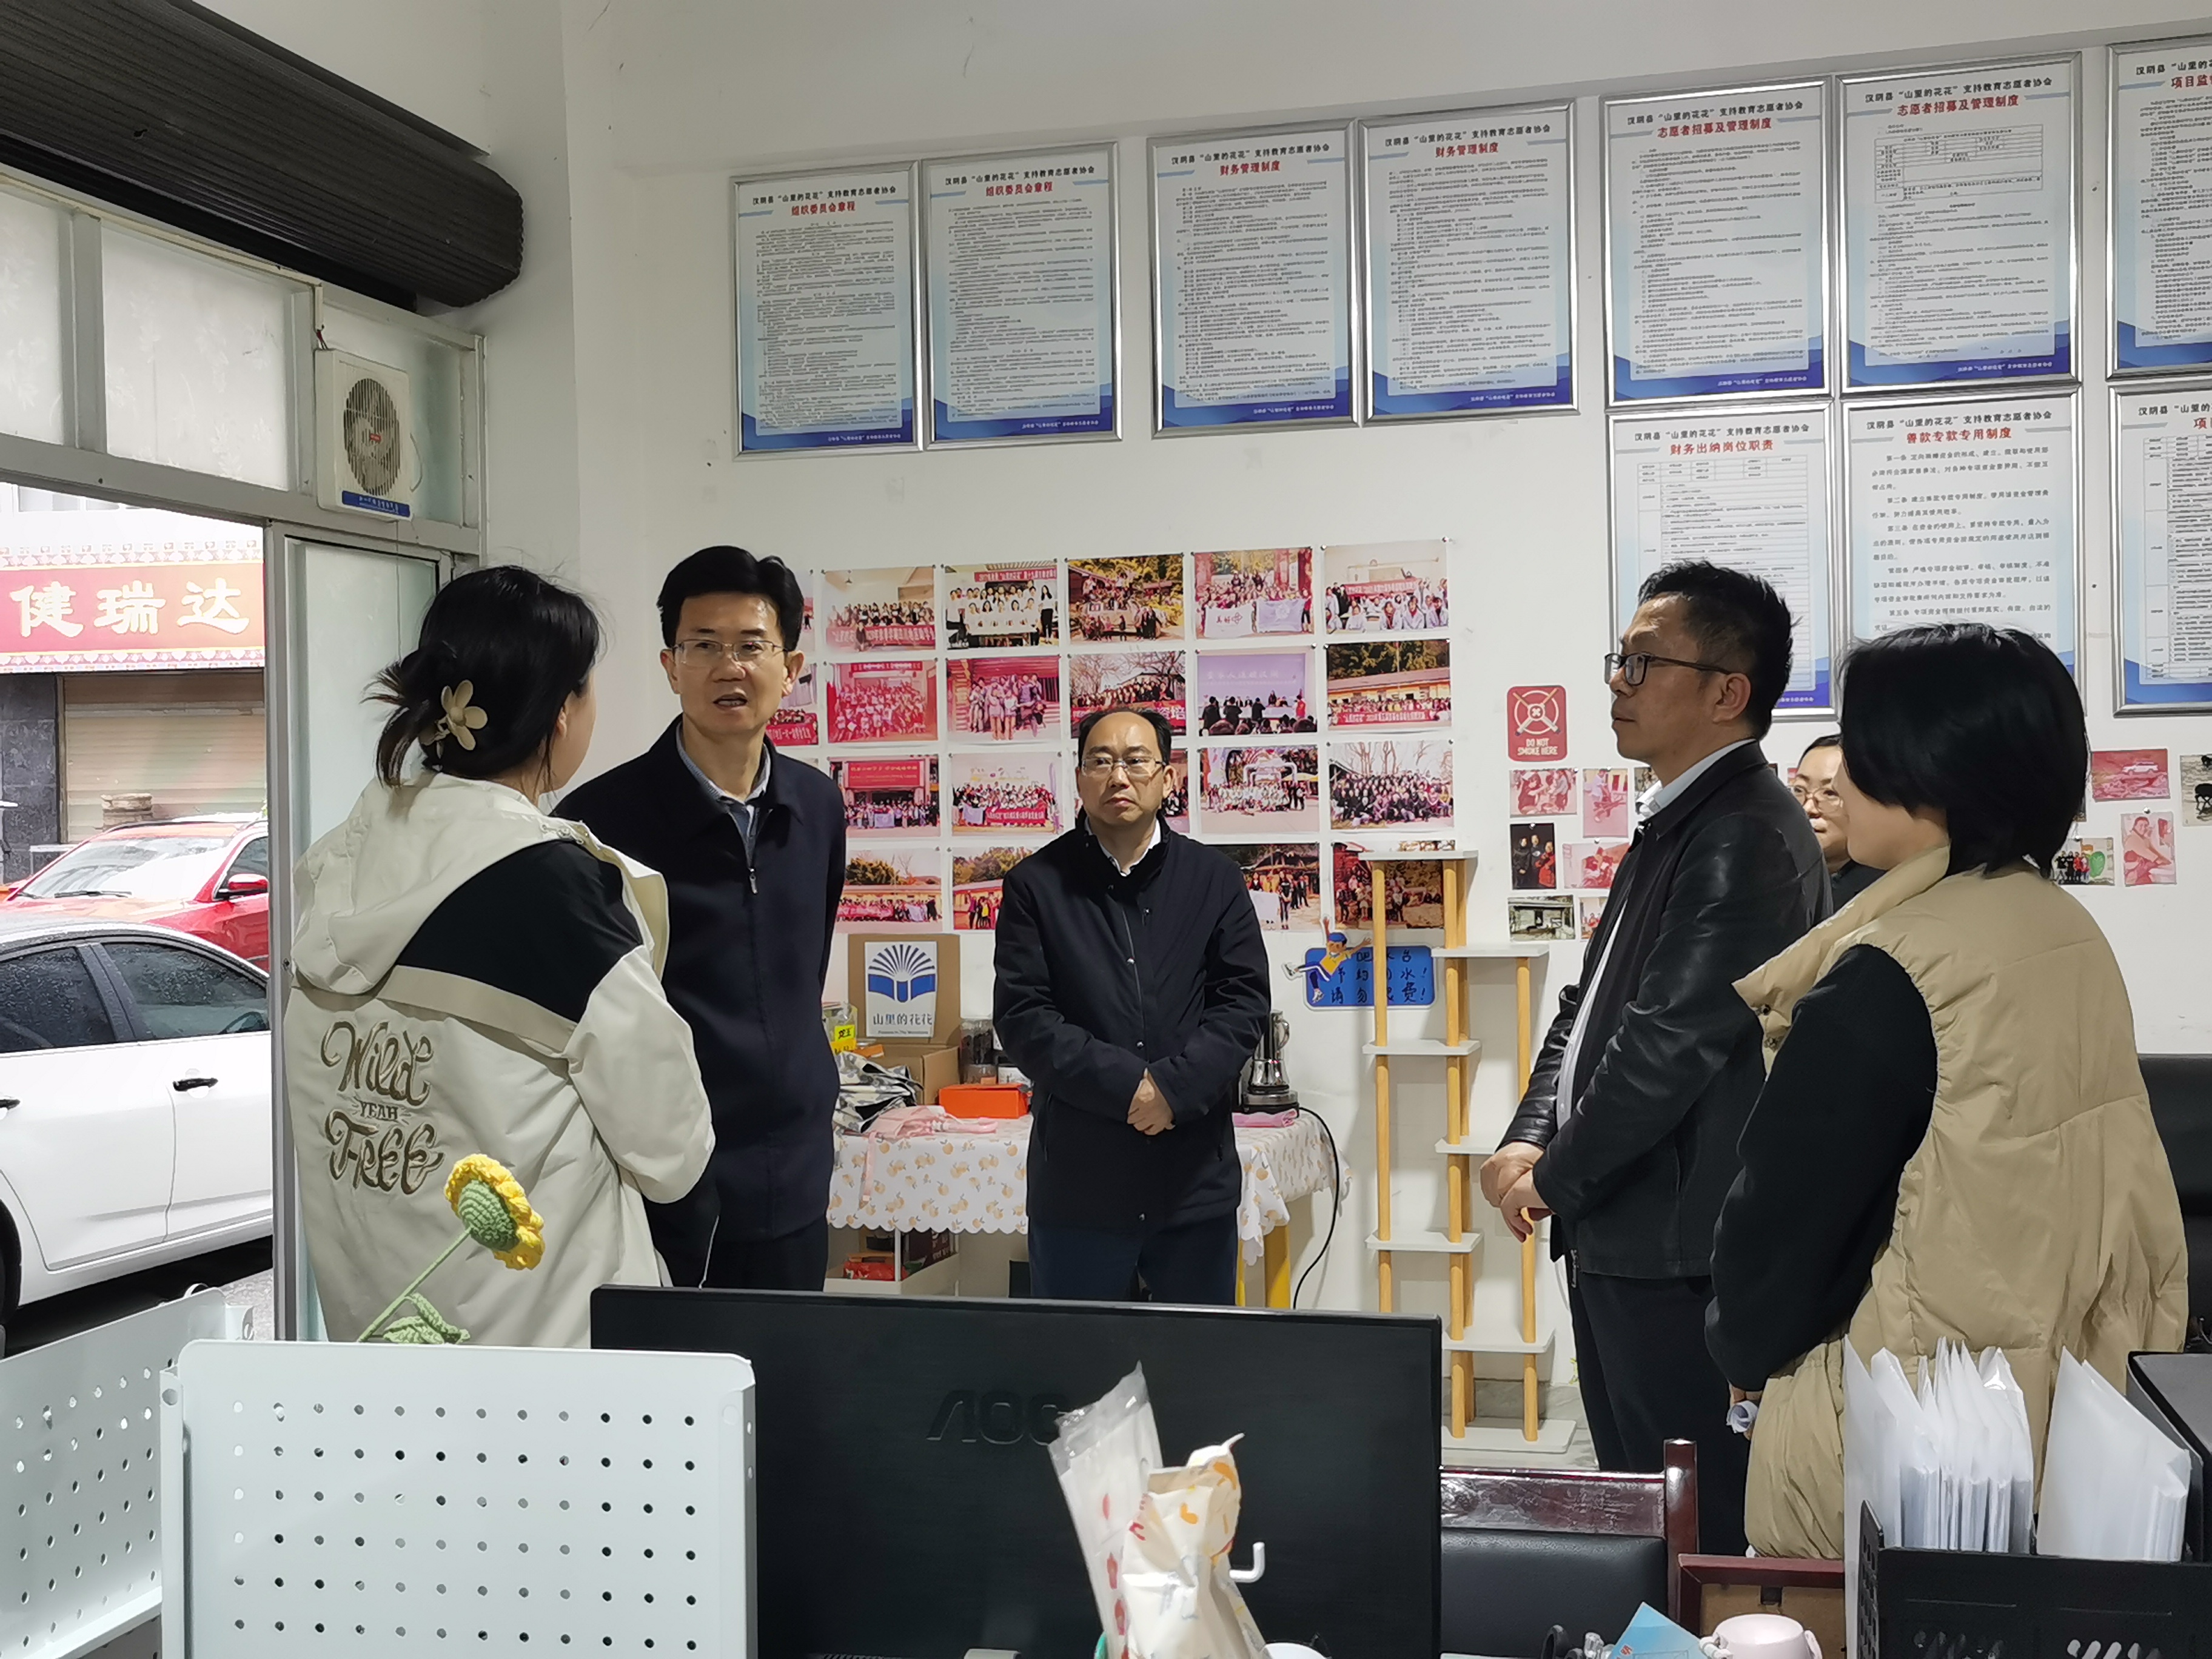 燕卫东调研指导汉阴县未成年人保护工作